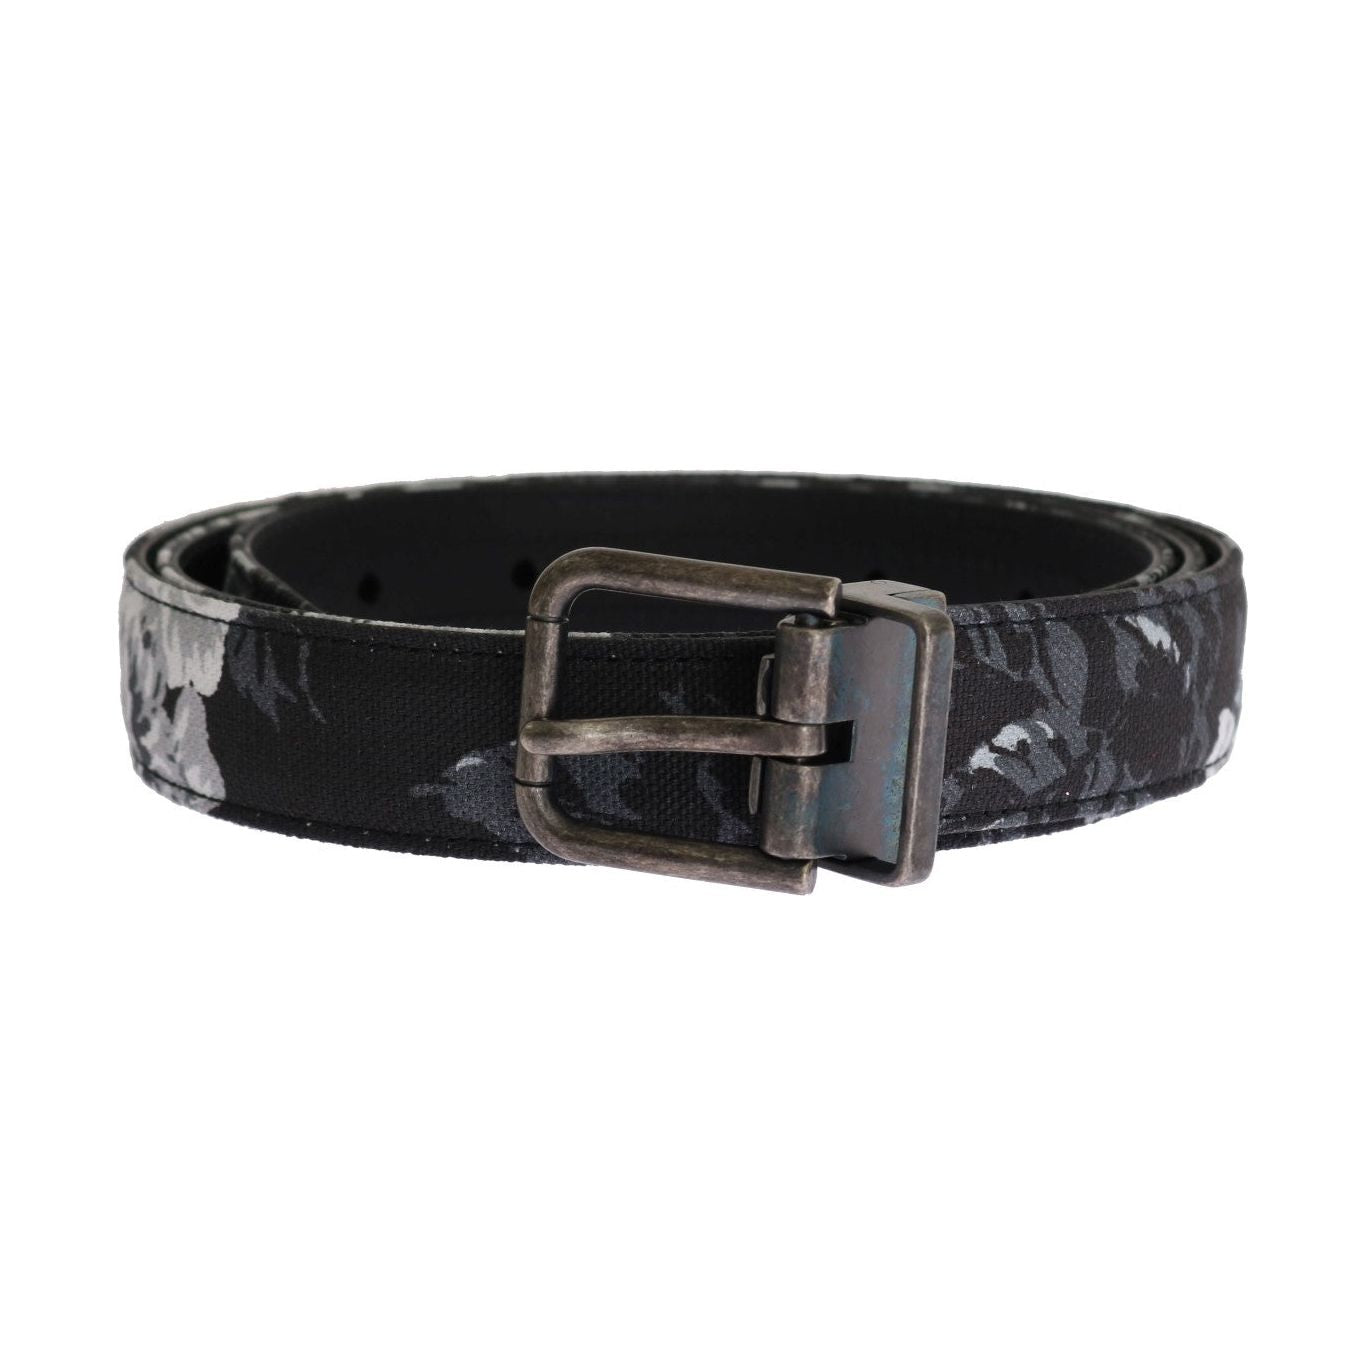 Dolce & Gabbana Elegant Floral Patterned Men's Luxury Belt black-cayman-linen-leather-belt Belt 456472-black-cayman-linen-leather-belt.jpg